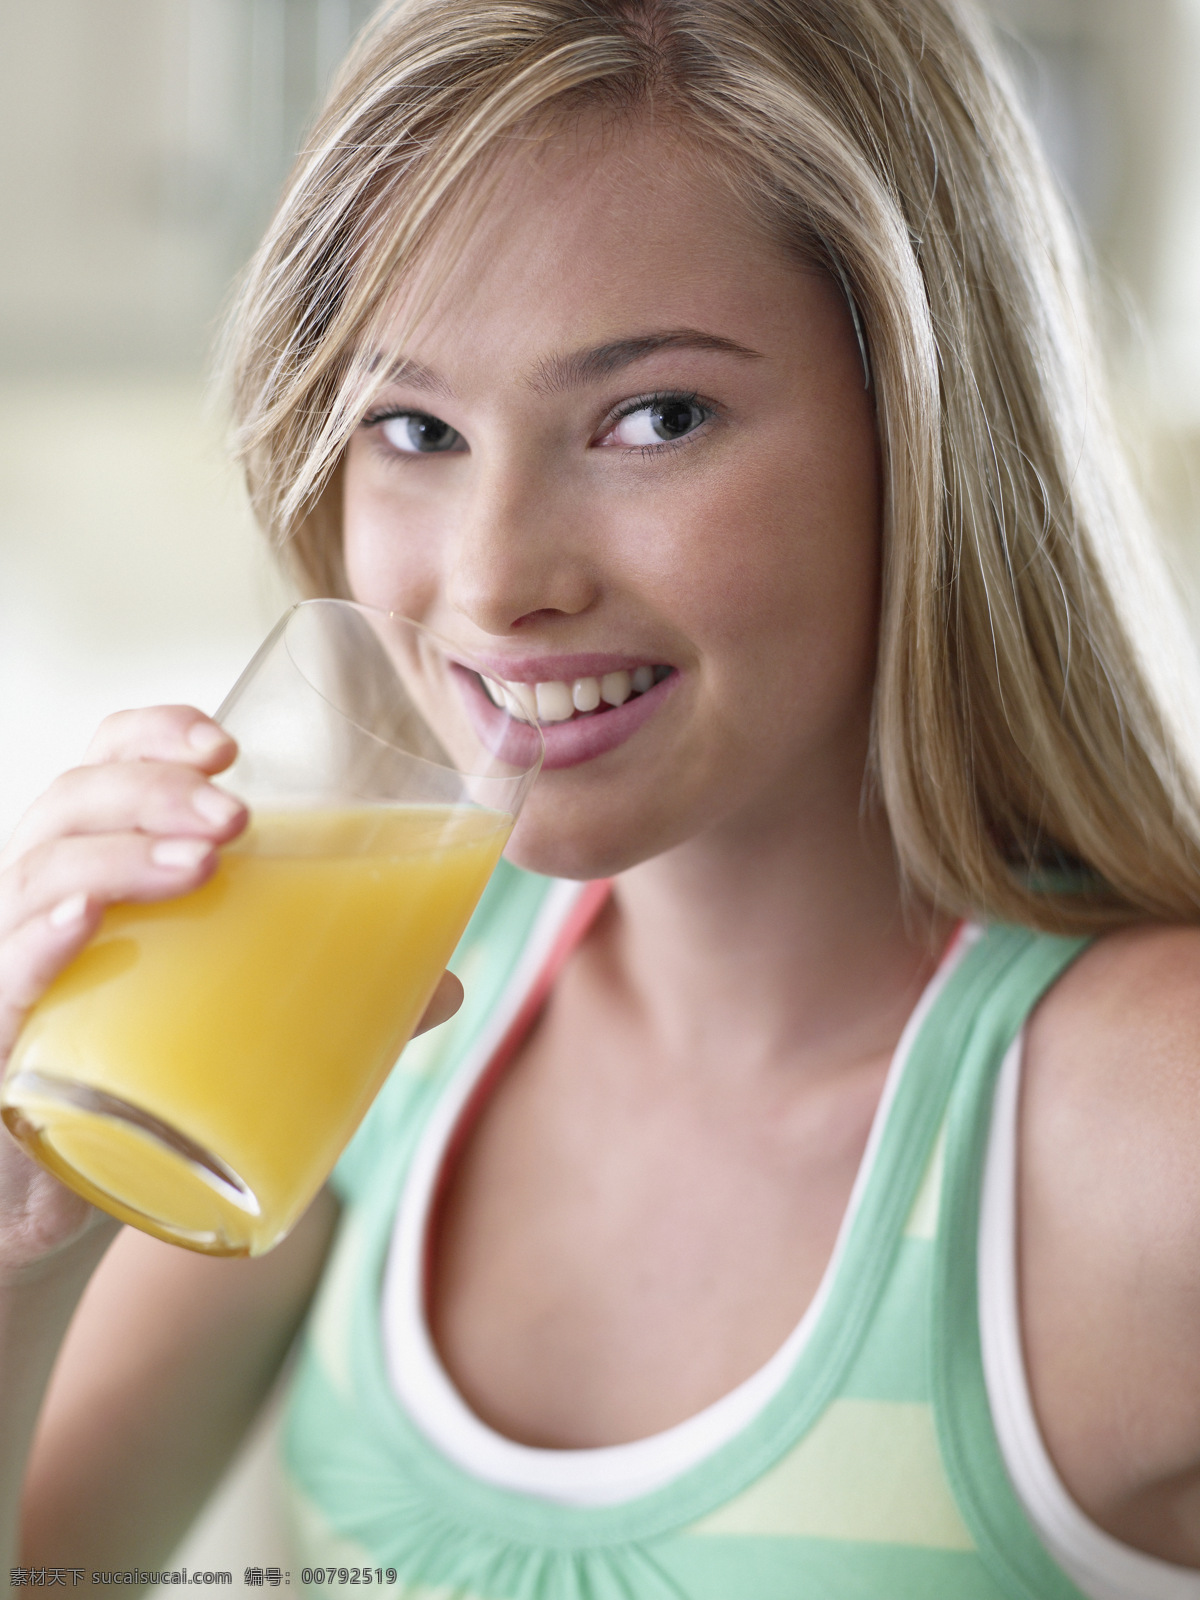 准备 喝 果汁 少女 人物 女性 健康生活 贝子 饮料 橙汁 微笑 生活人物 人物图片